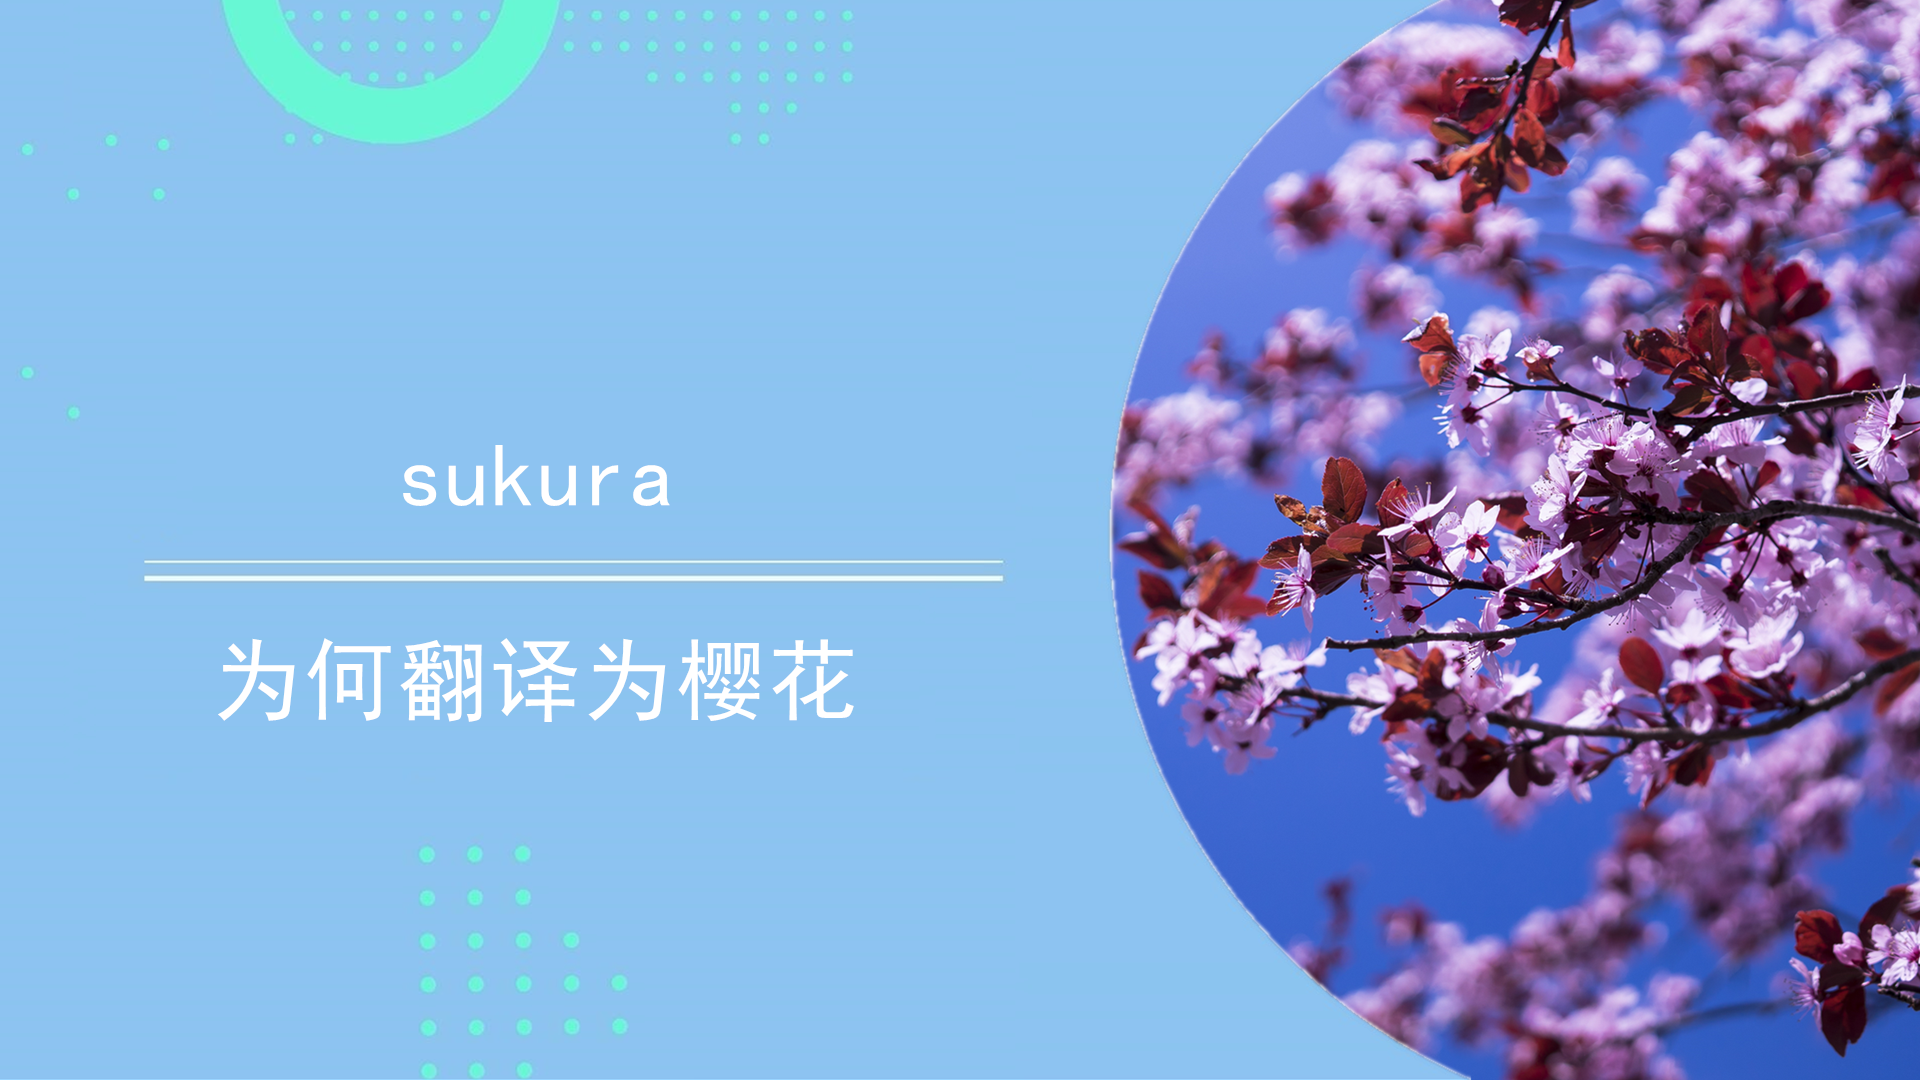 sukura为何翻译为樱花